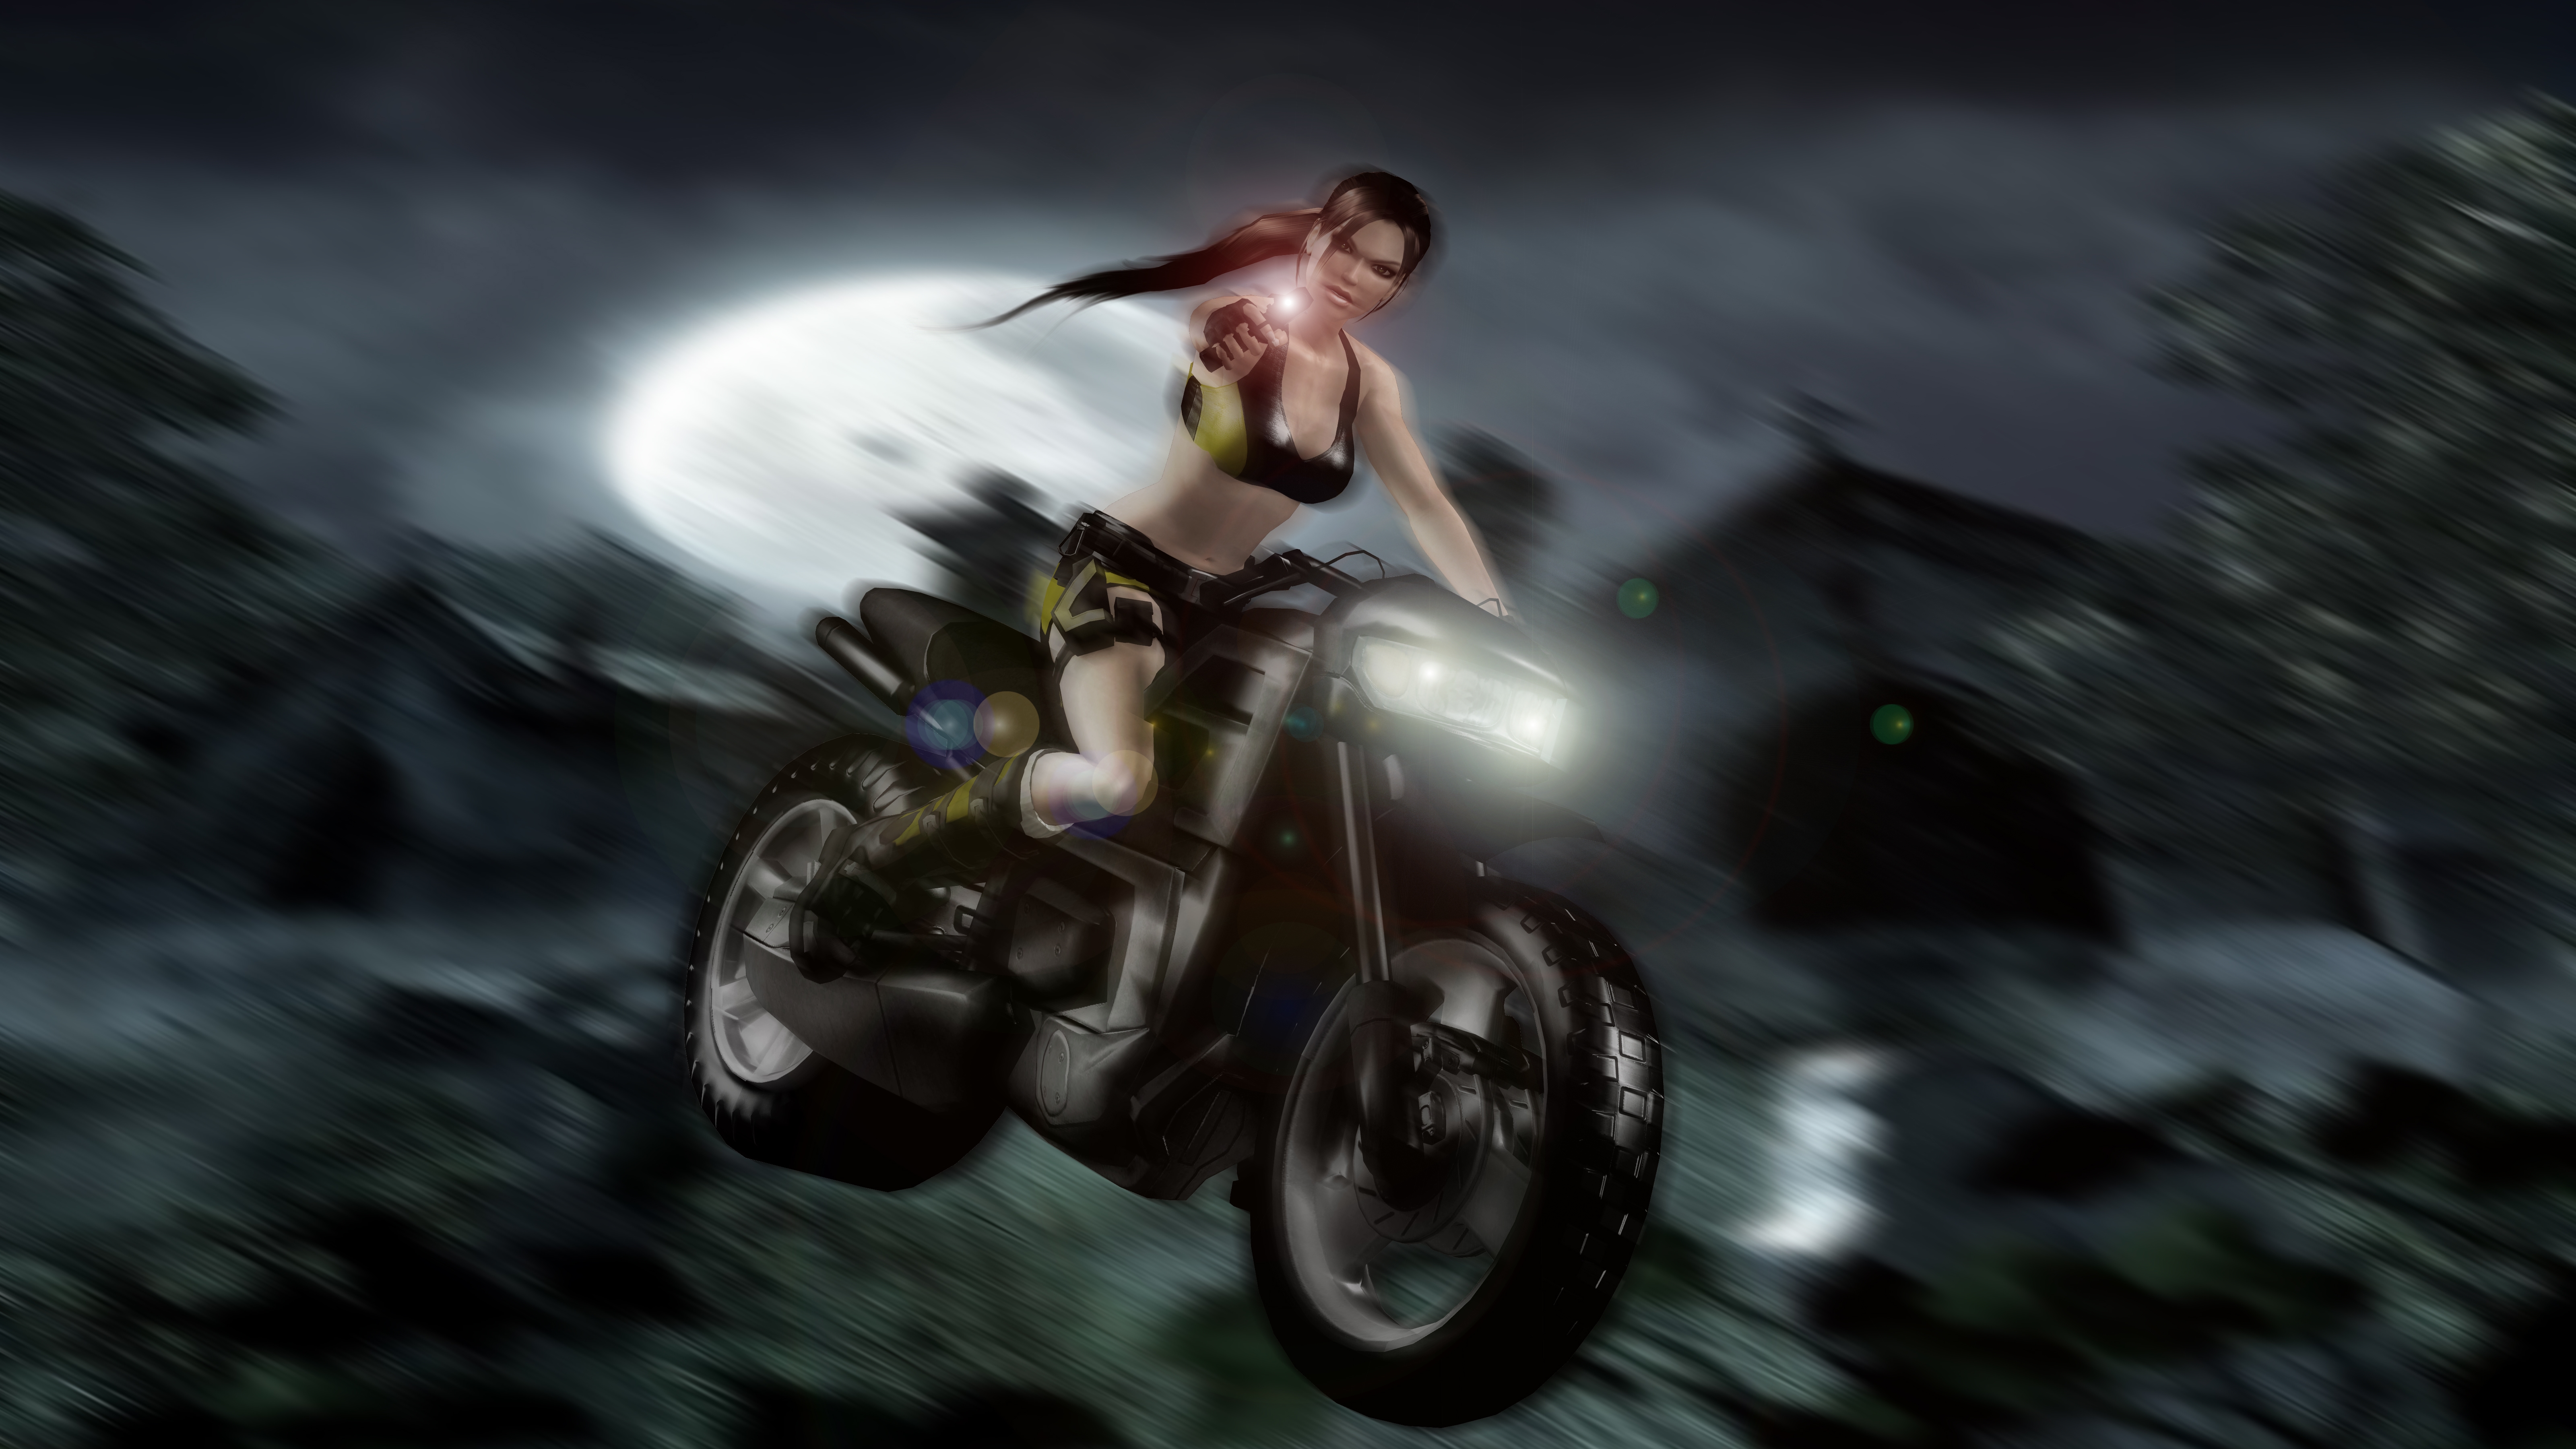 Free download wallpaper Tomb Raider, Lara Croft, Video Game on your PC desktop